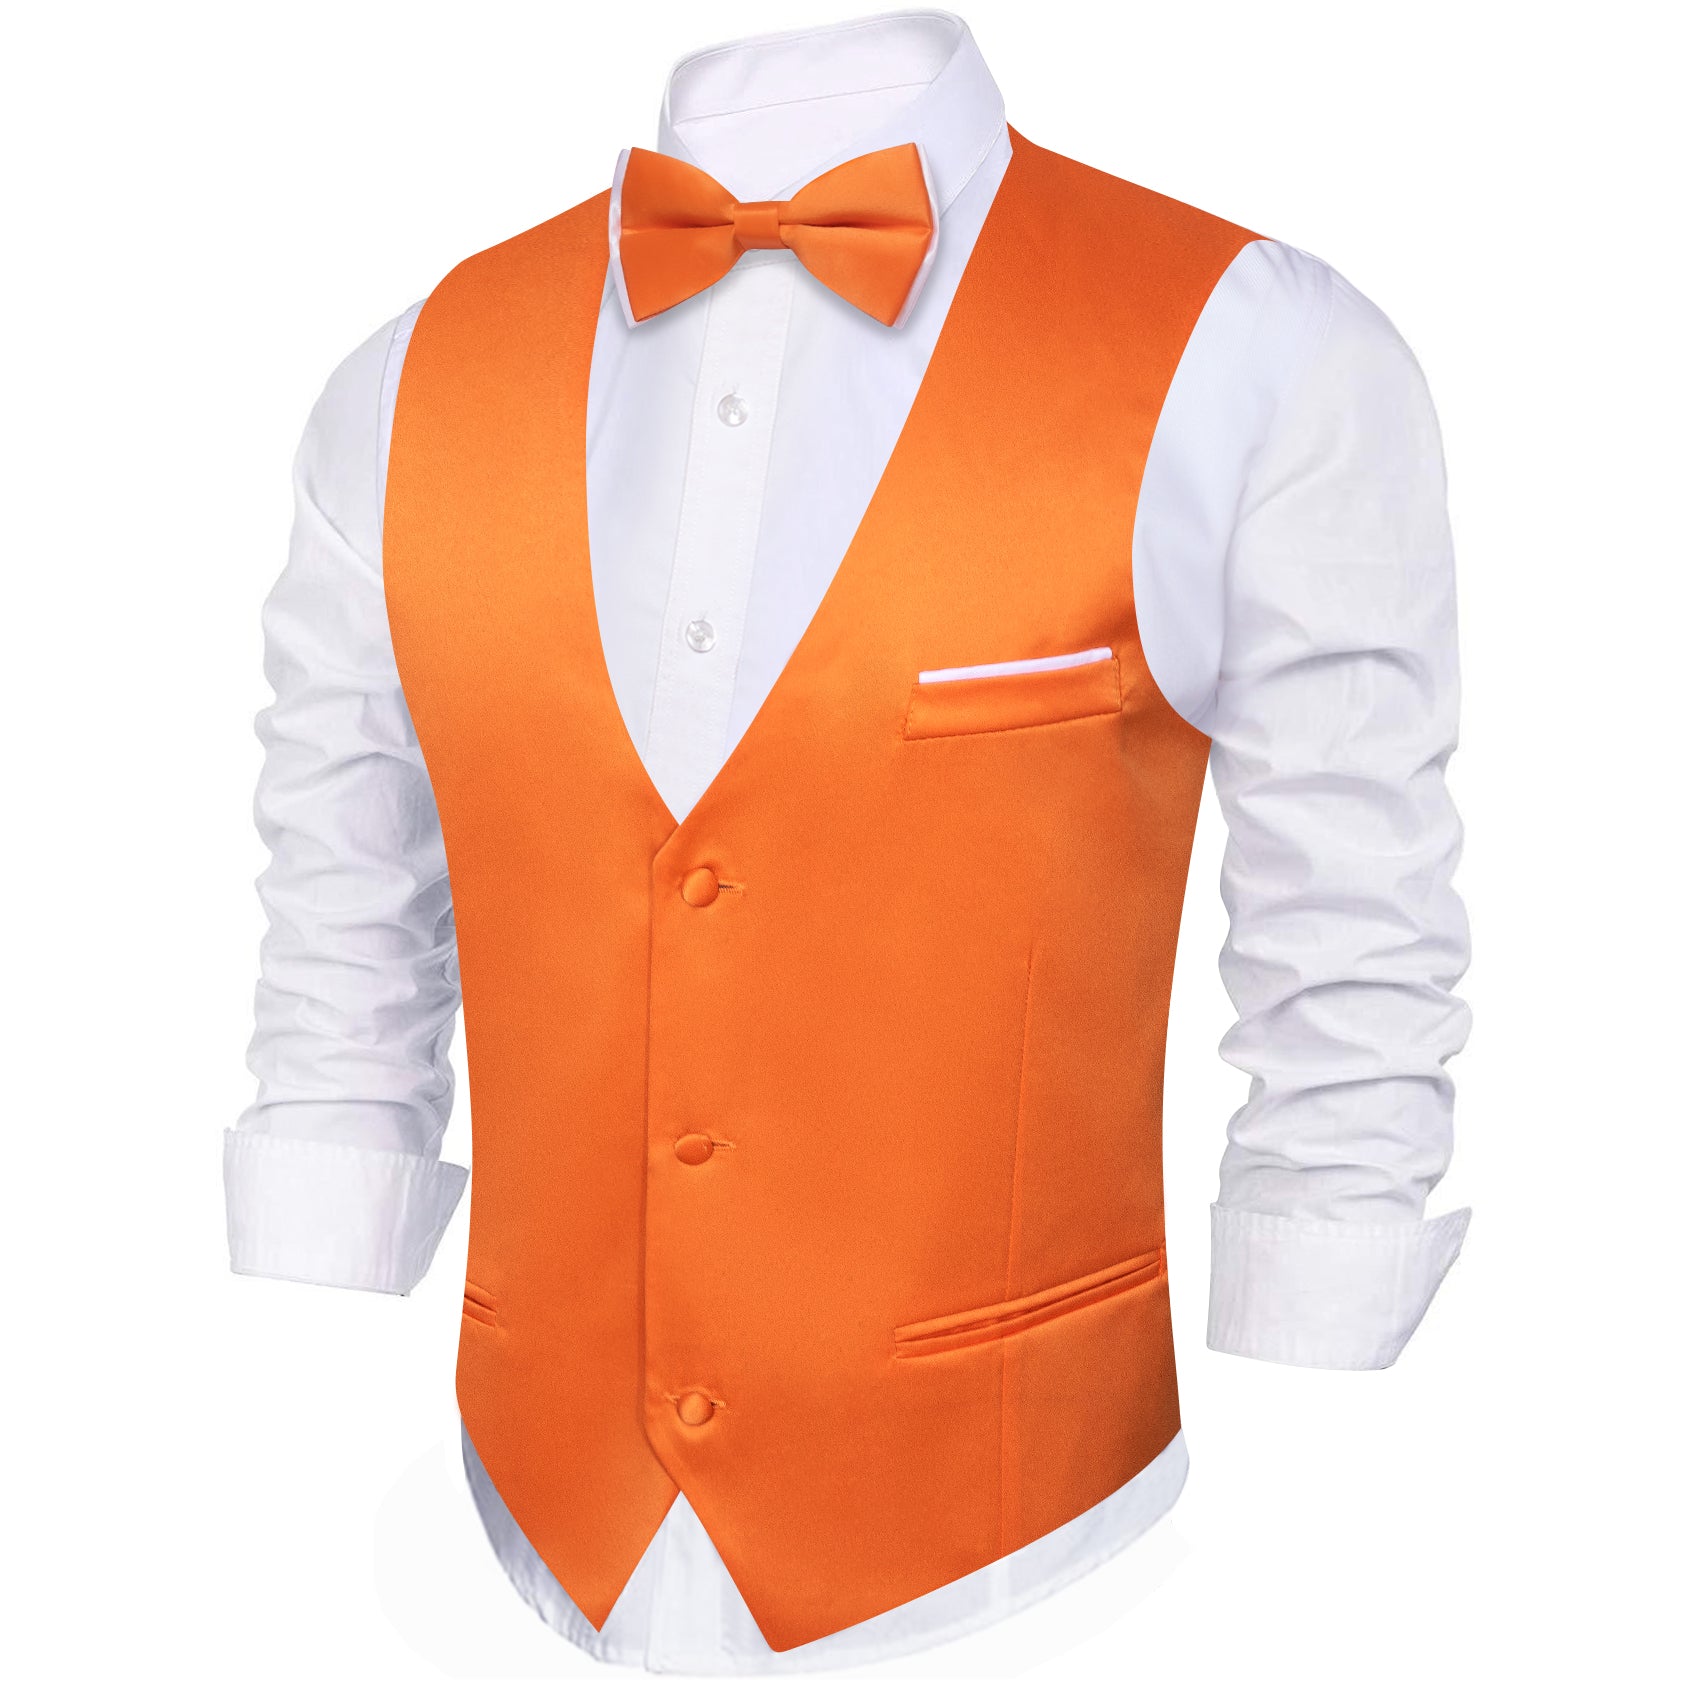 Orange Solid Silk Vest Bowtie Pocket Square Cufflinks Set